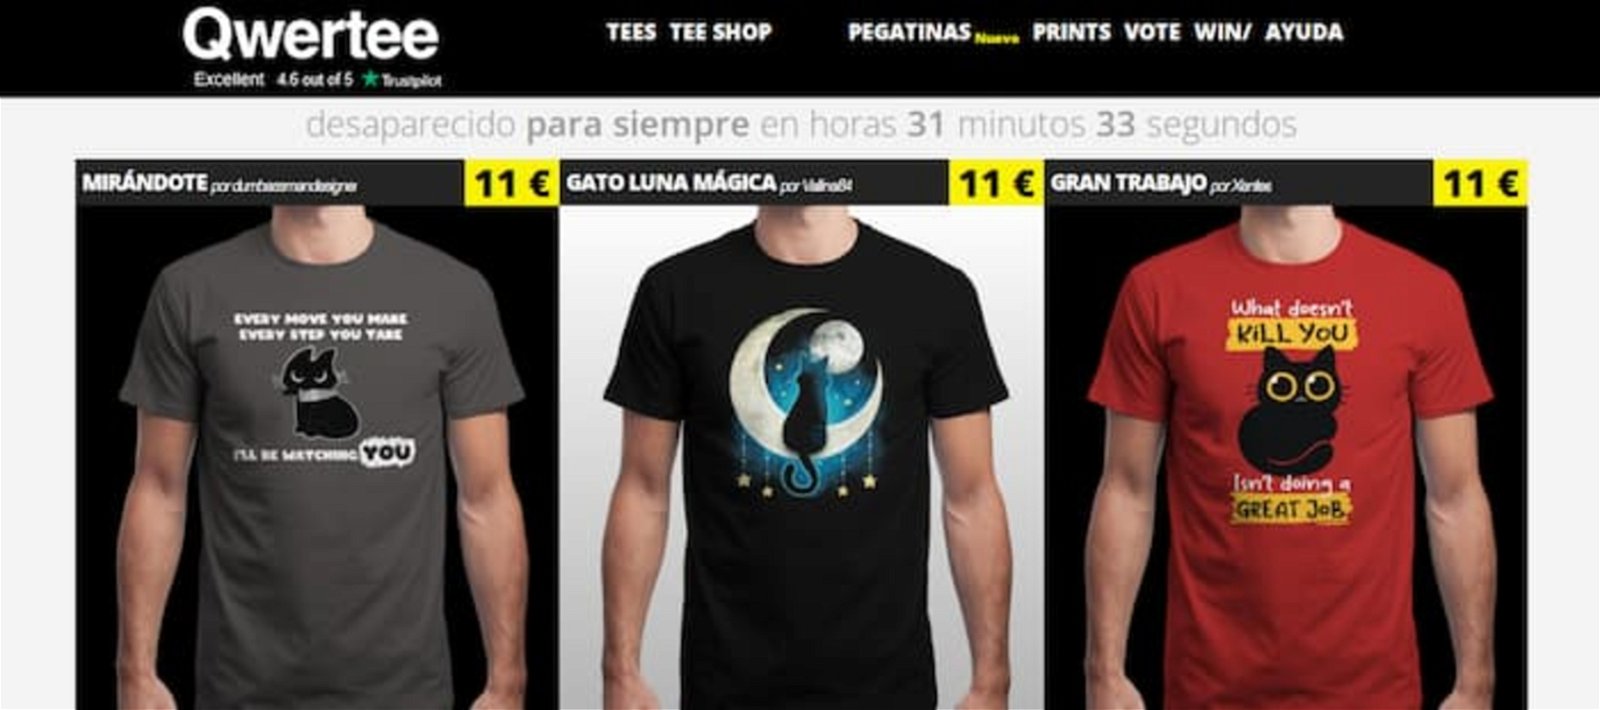 Corte de pelo Especialidad Orbita Las mejores 9 webs para comprar camisetas originales online